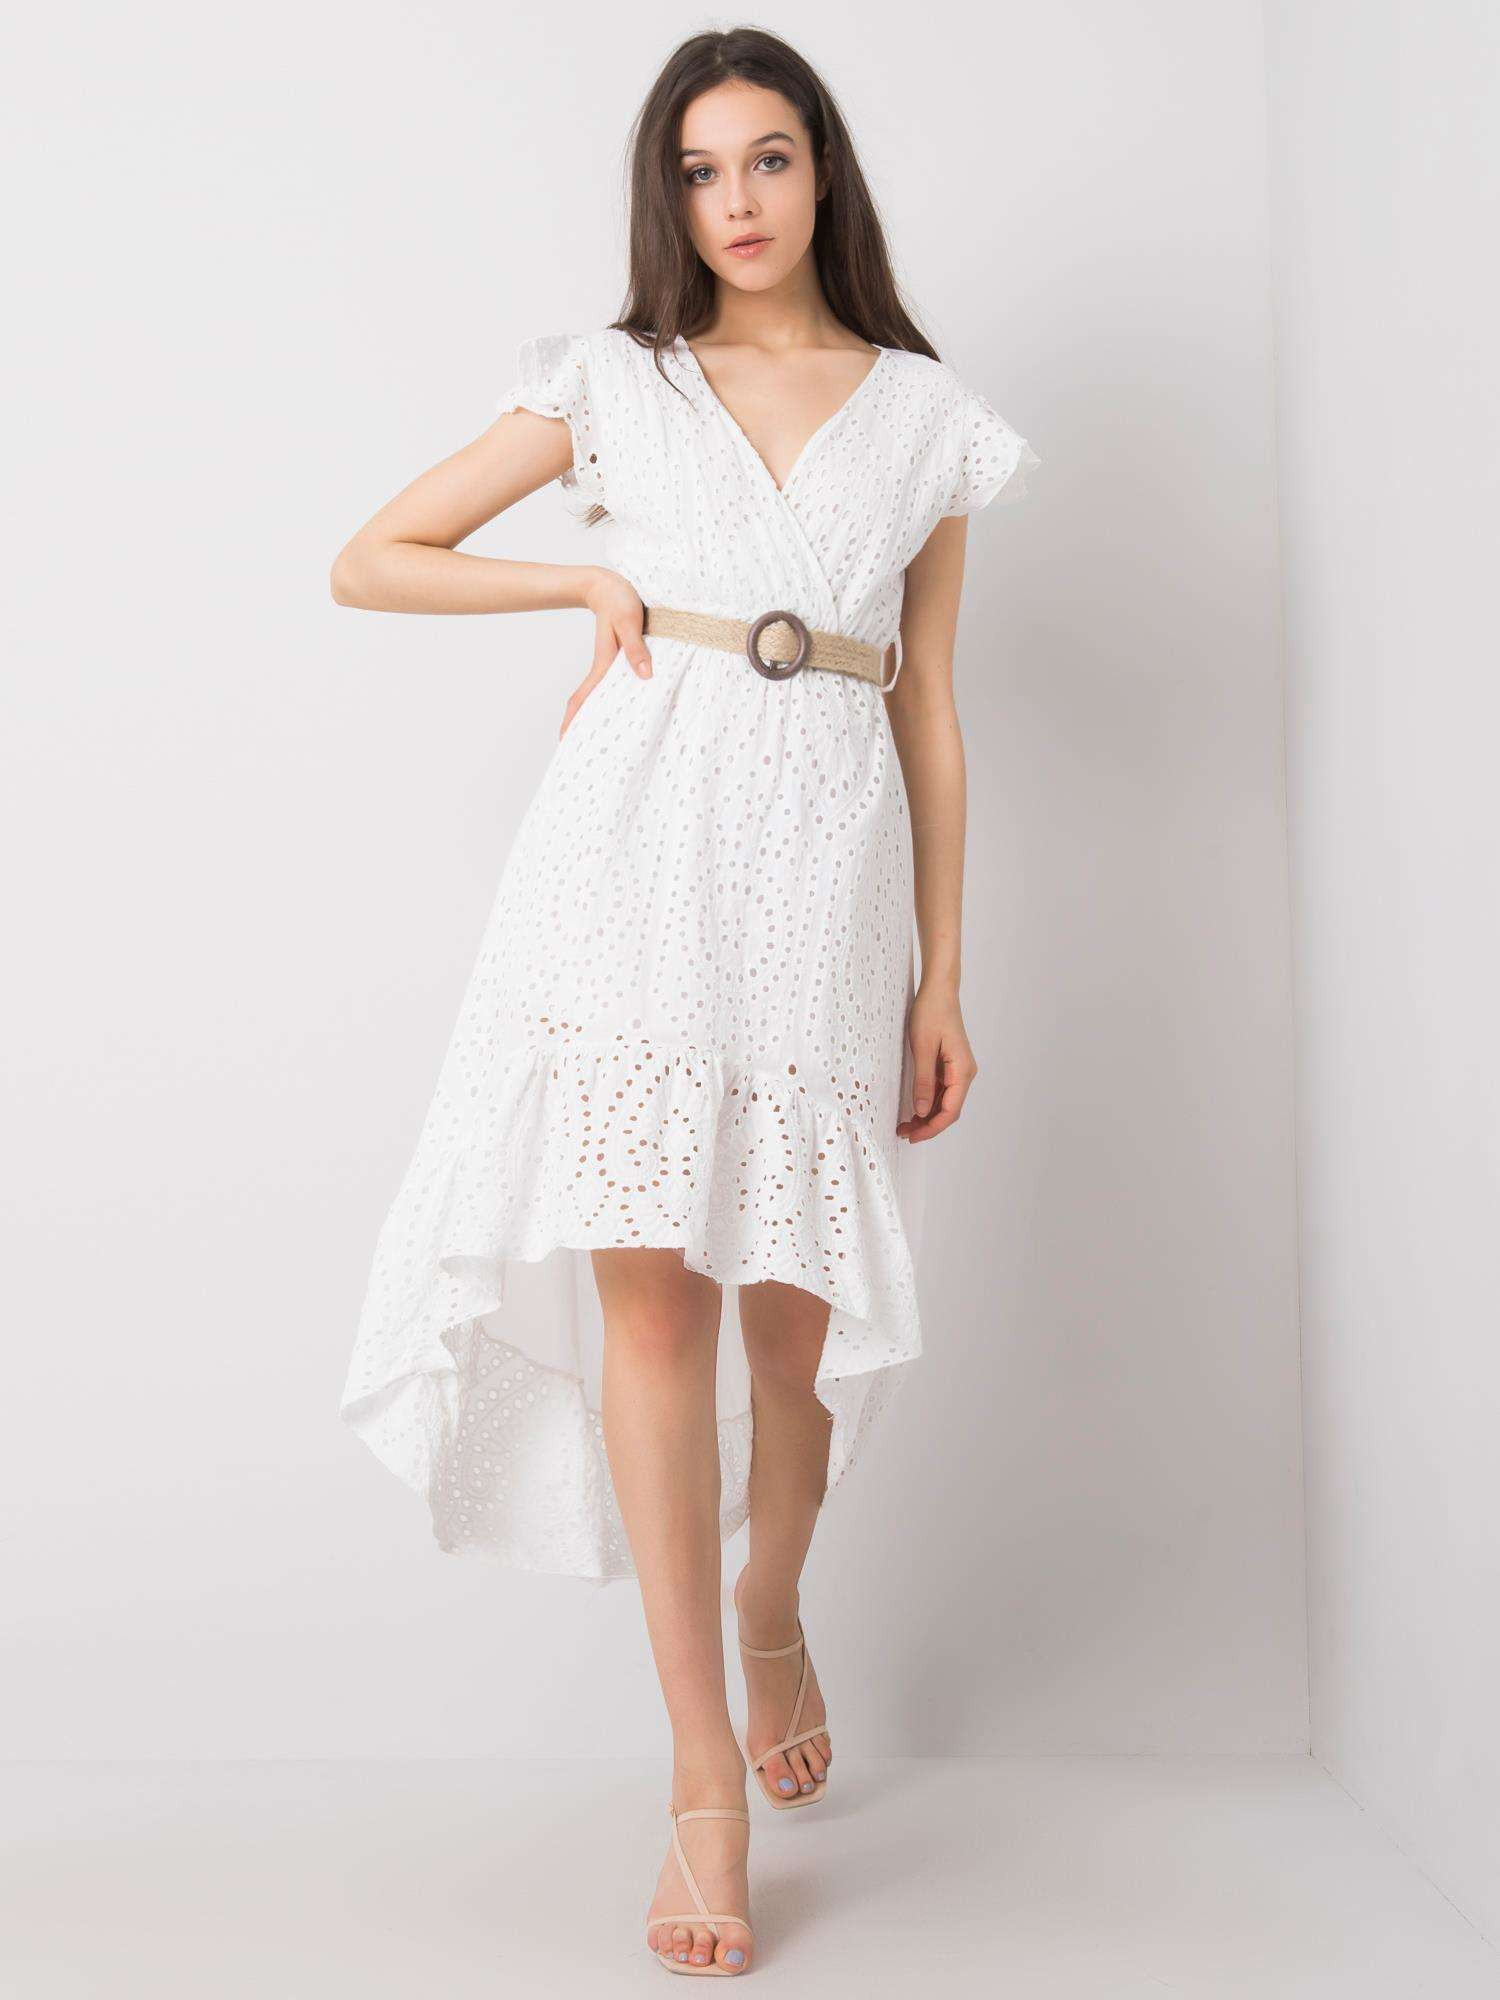 Dámské šaty TW SK BI 25482.20 bílé - FPrice bílá XL